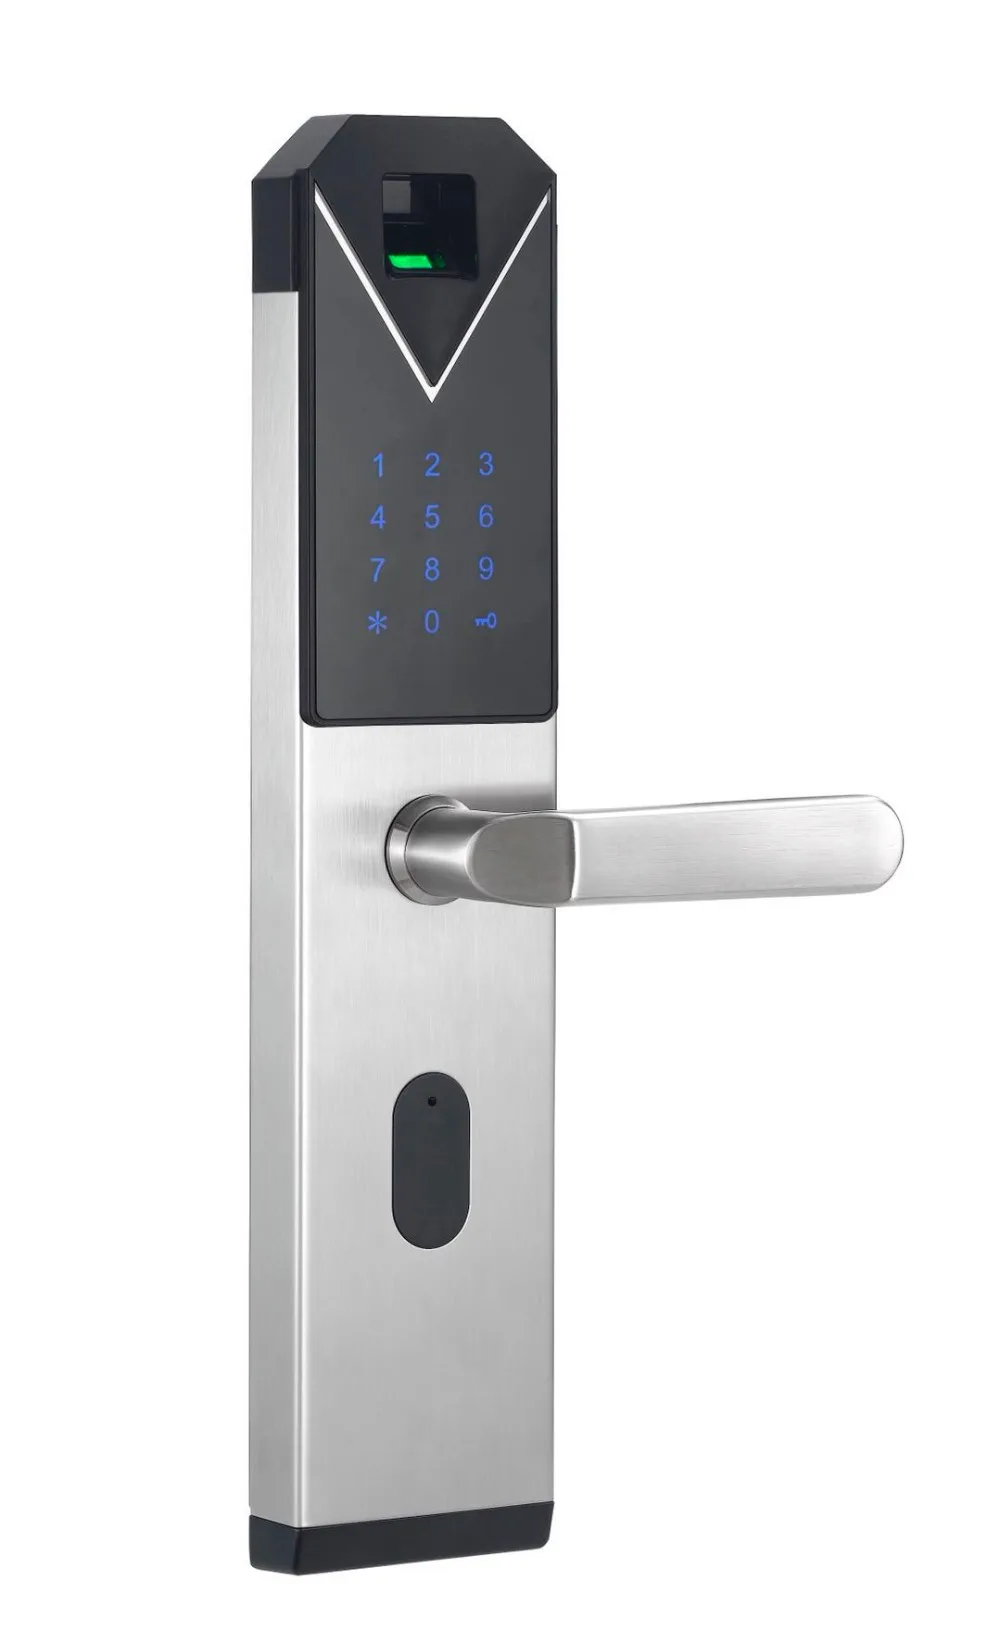 Yobang безопасности Умный Замок с Биометрическим распознаванием Smart Keyless замок отпечатков пальцев + Пароль RFID карты ключ разблокировки 4